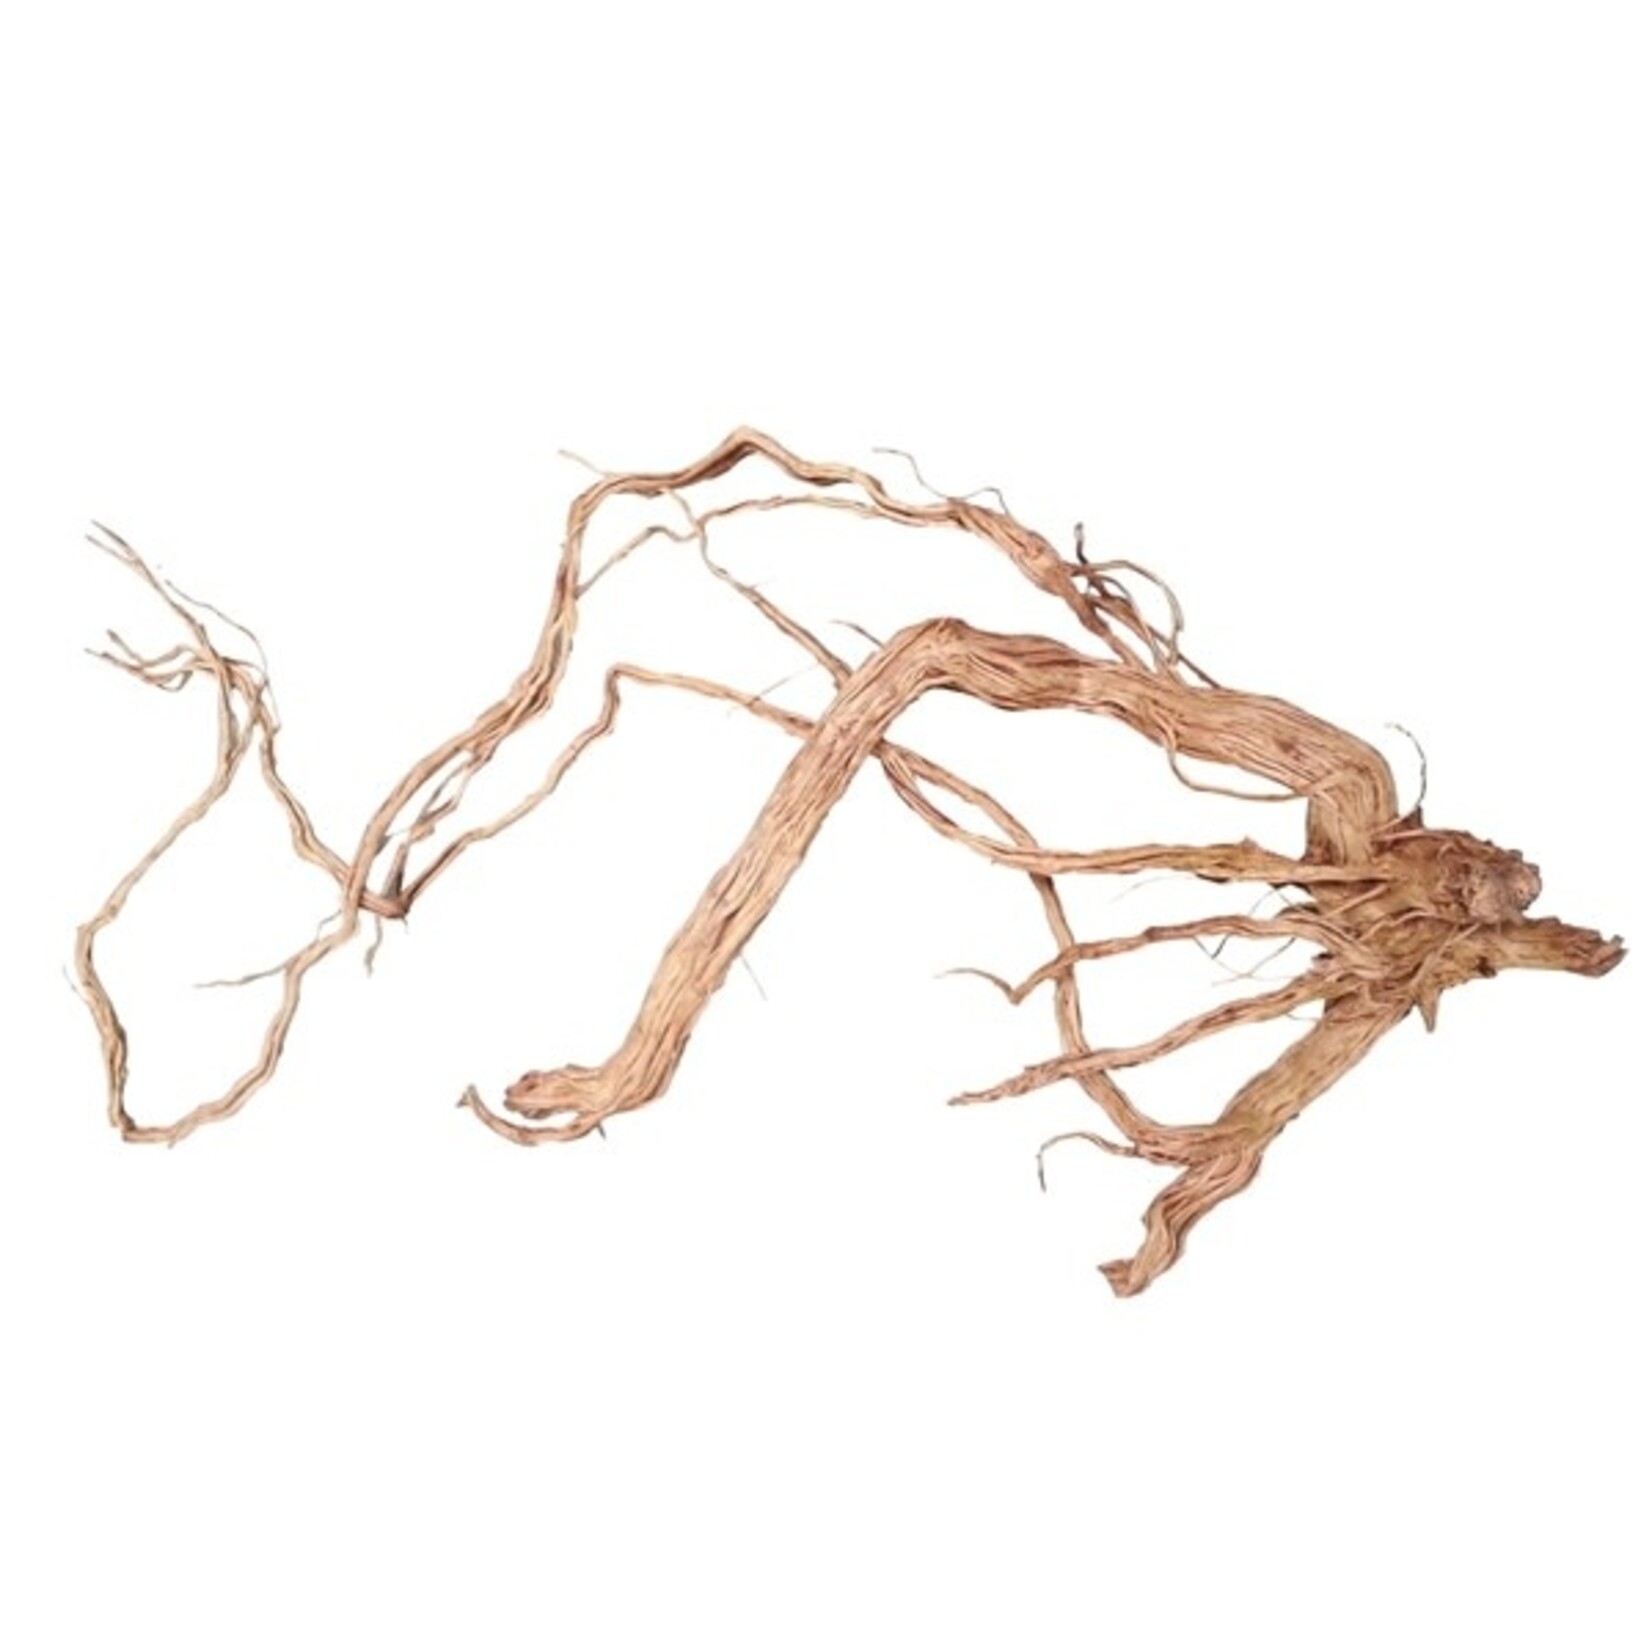 HS Aqua Azalea root m 50-80 cm per stuk